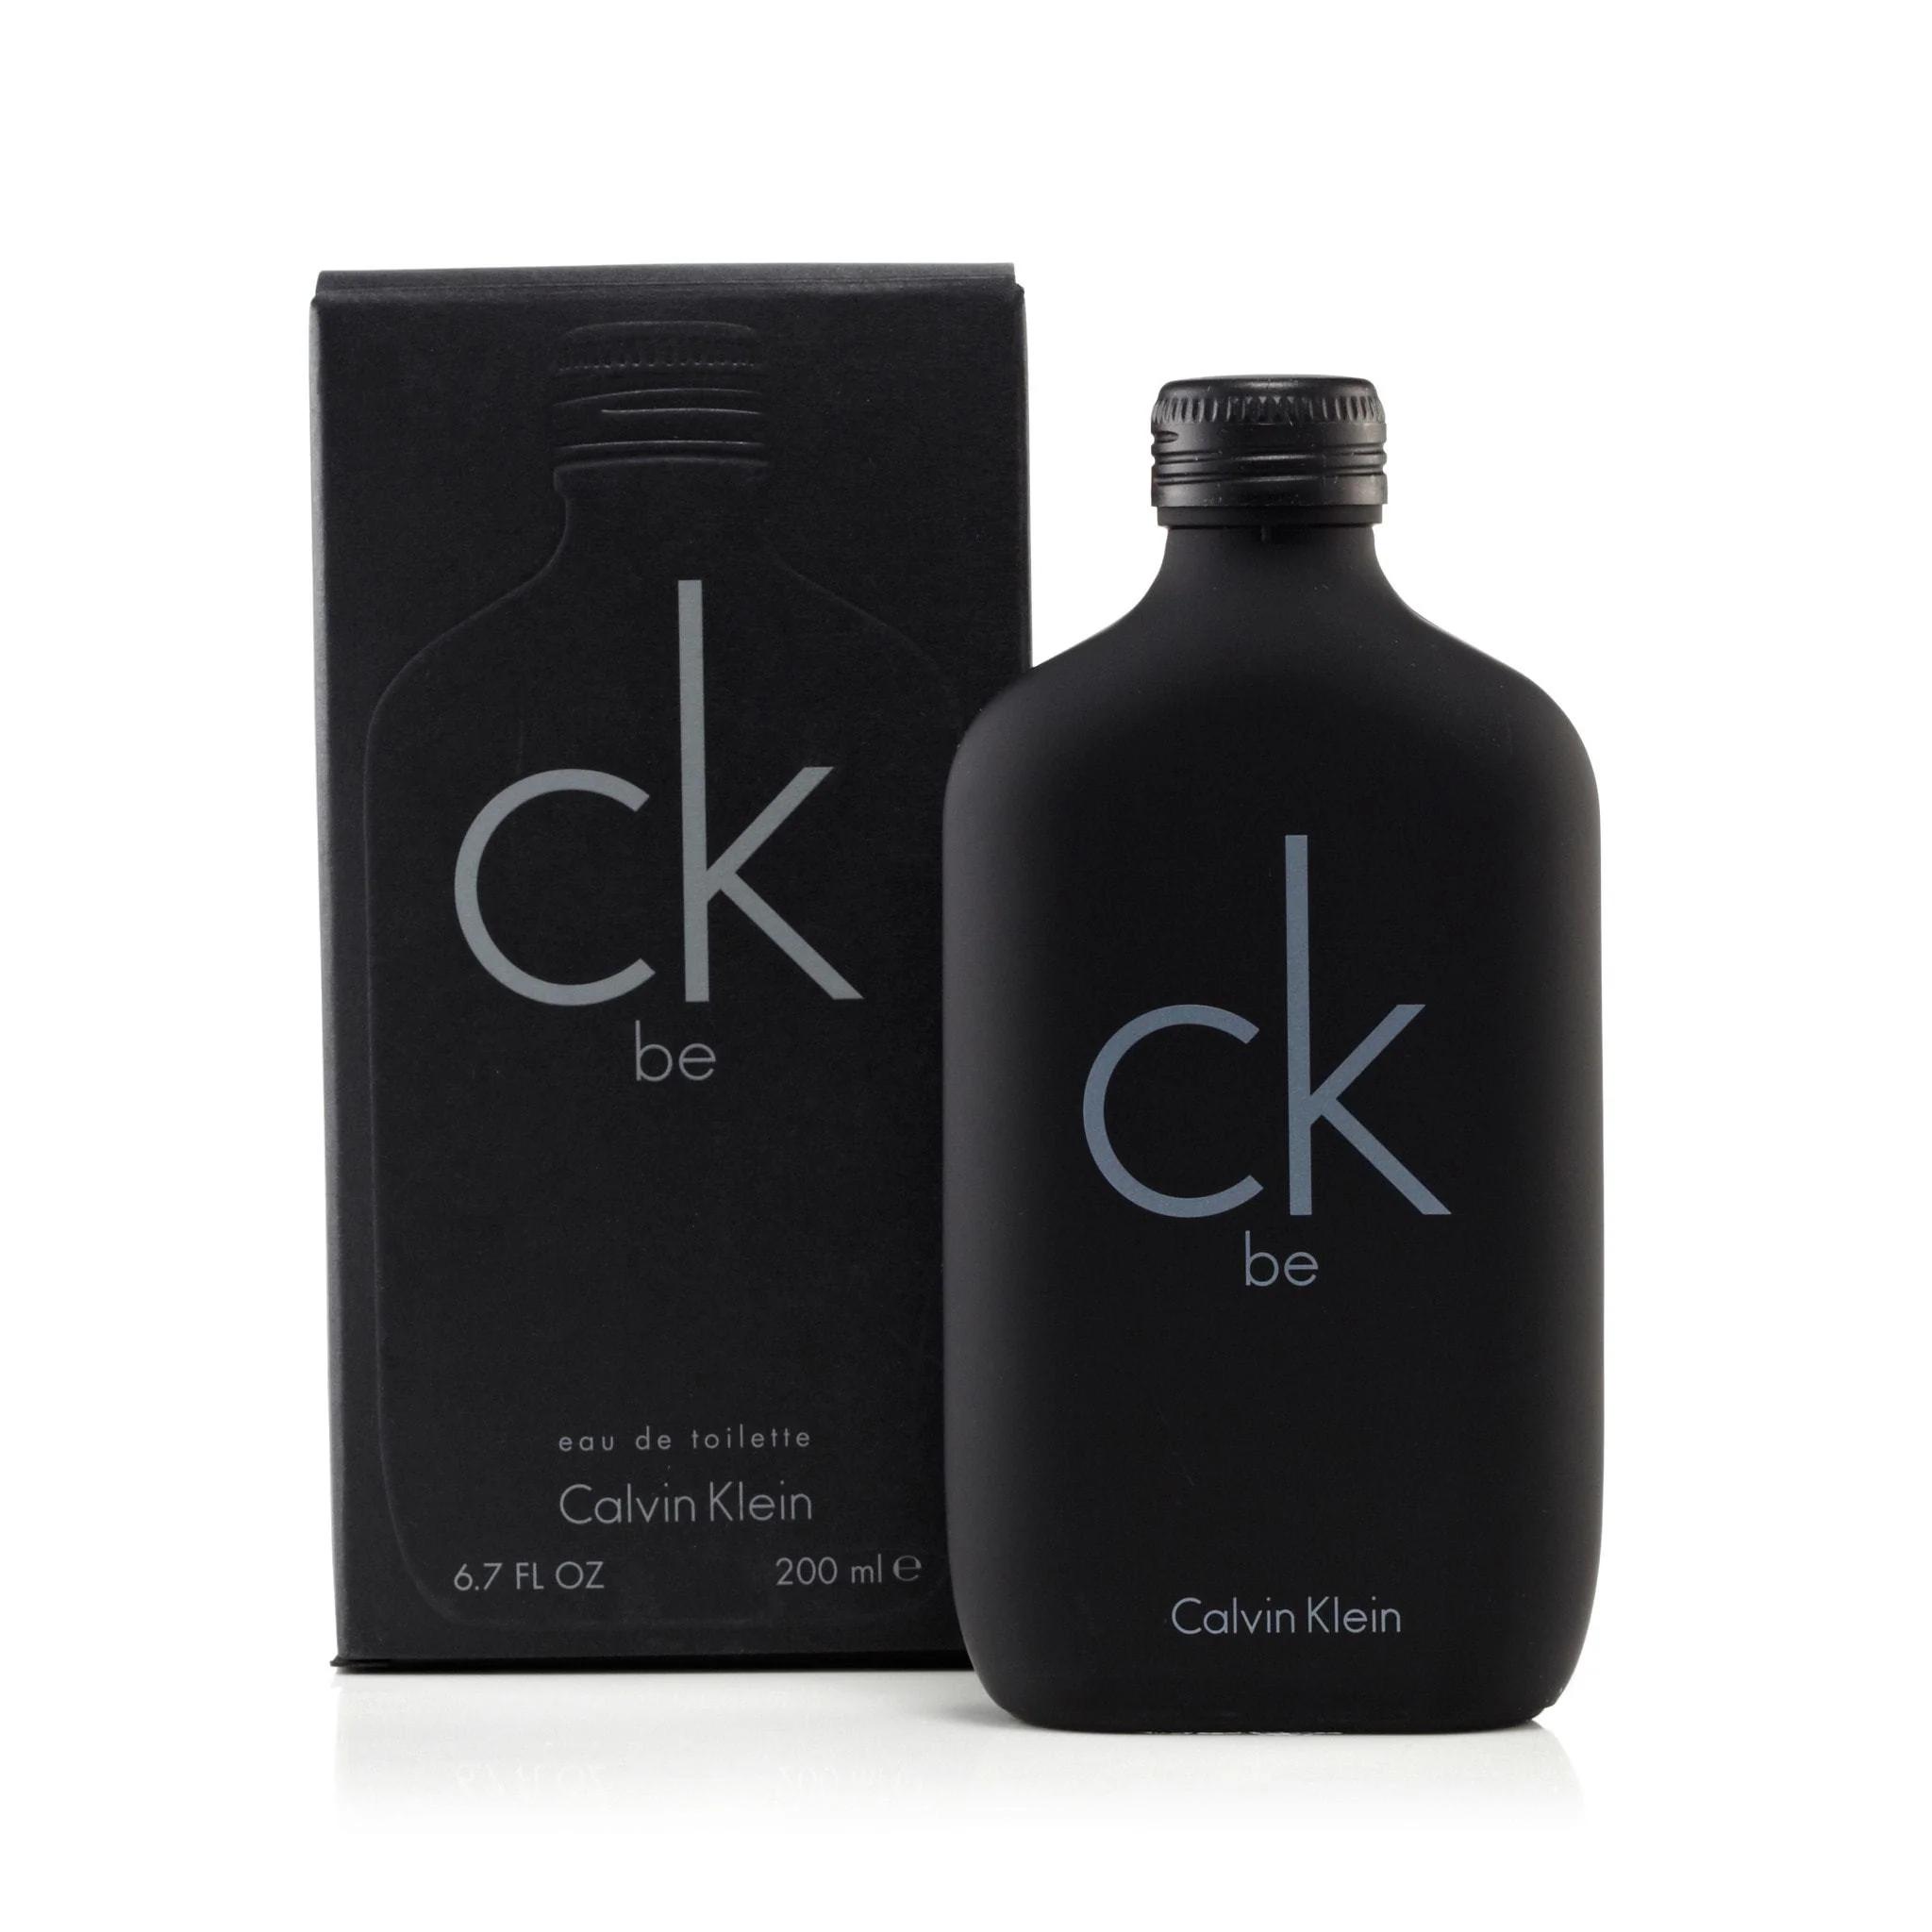 calvin klein be perfume hombre - Qué olor tiene el CK Be